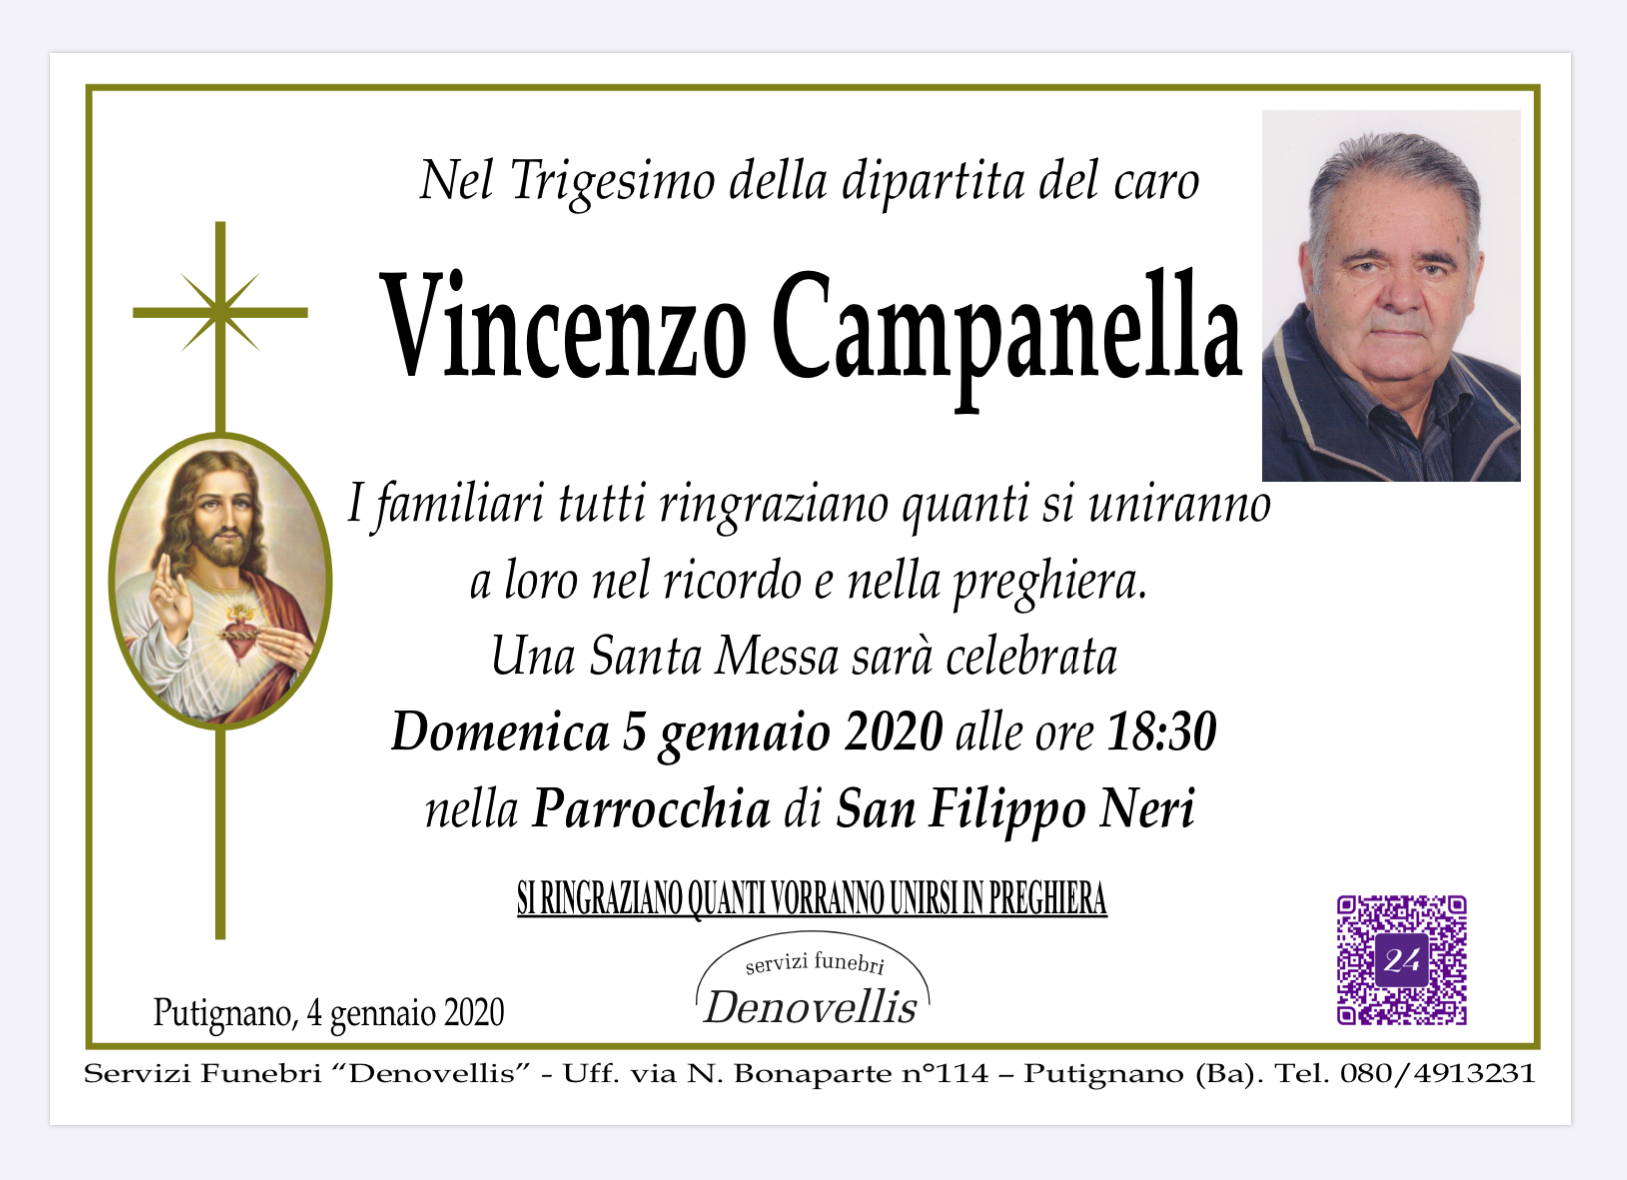 Vincenzo Campanella